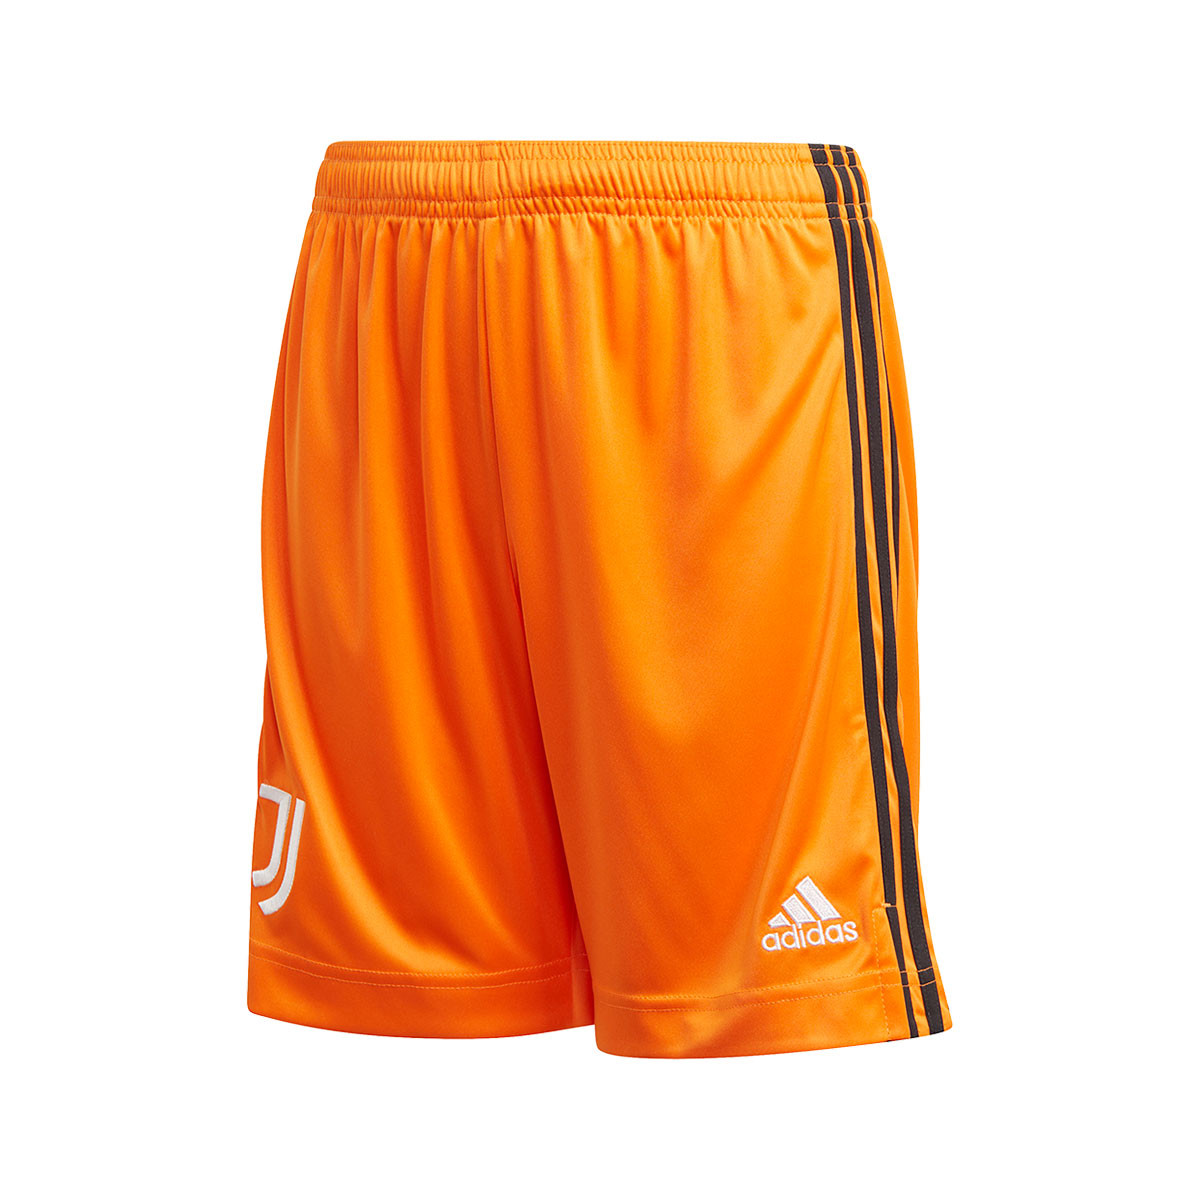 black and orange adidas shorts